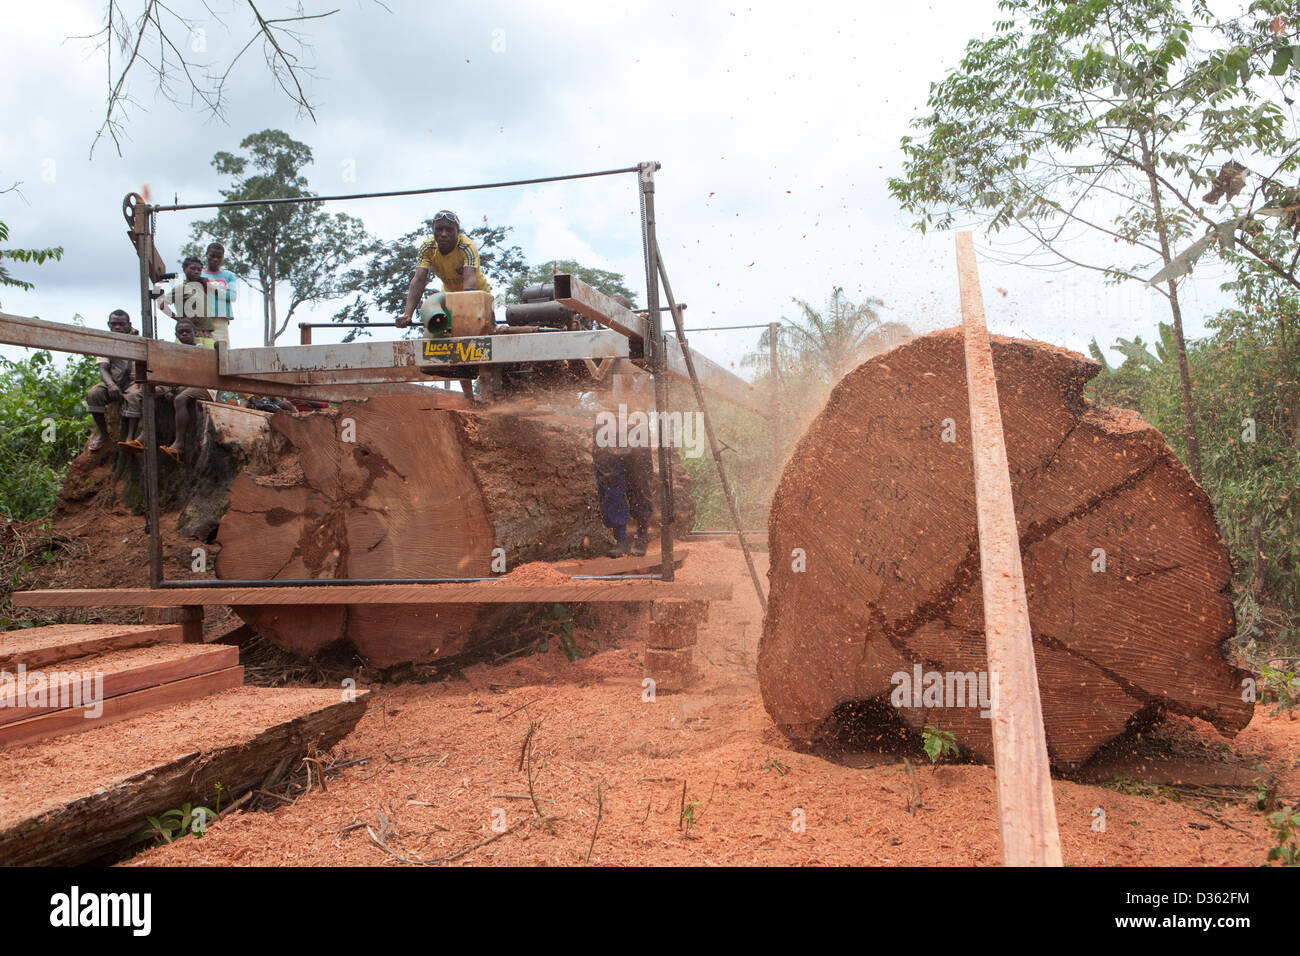 Camerún, 2 de octubre de 2012: una tripulación de registro móvil de madera cortada de un gran árbol de madera dura. Foto de stock